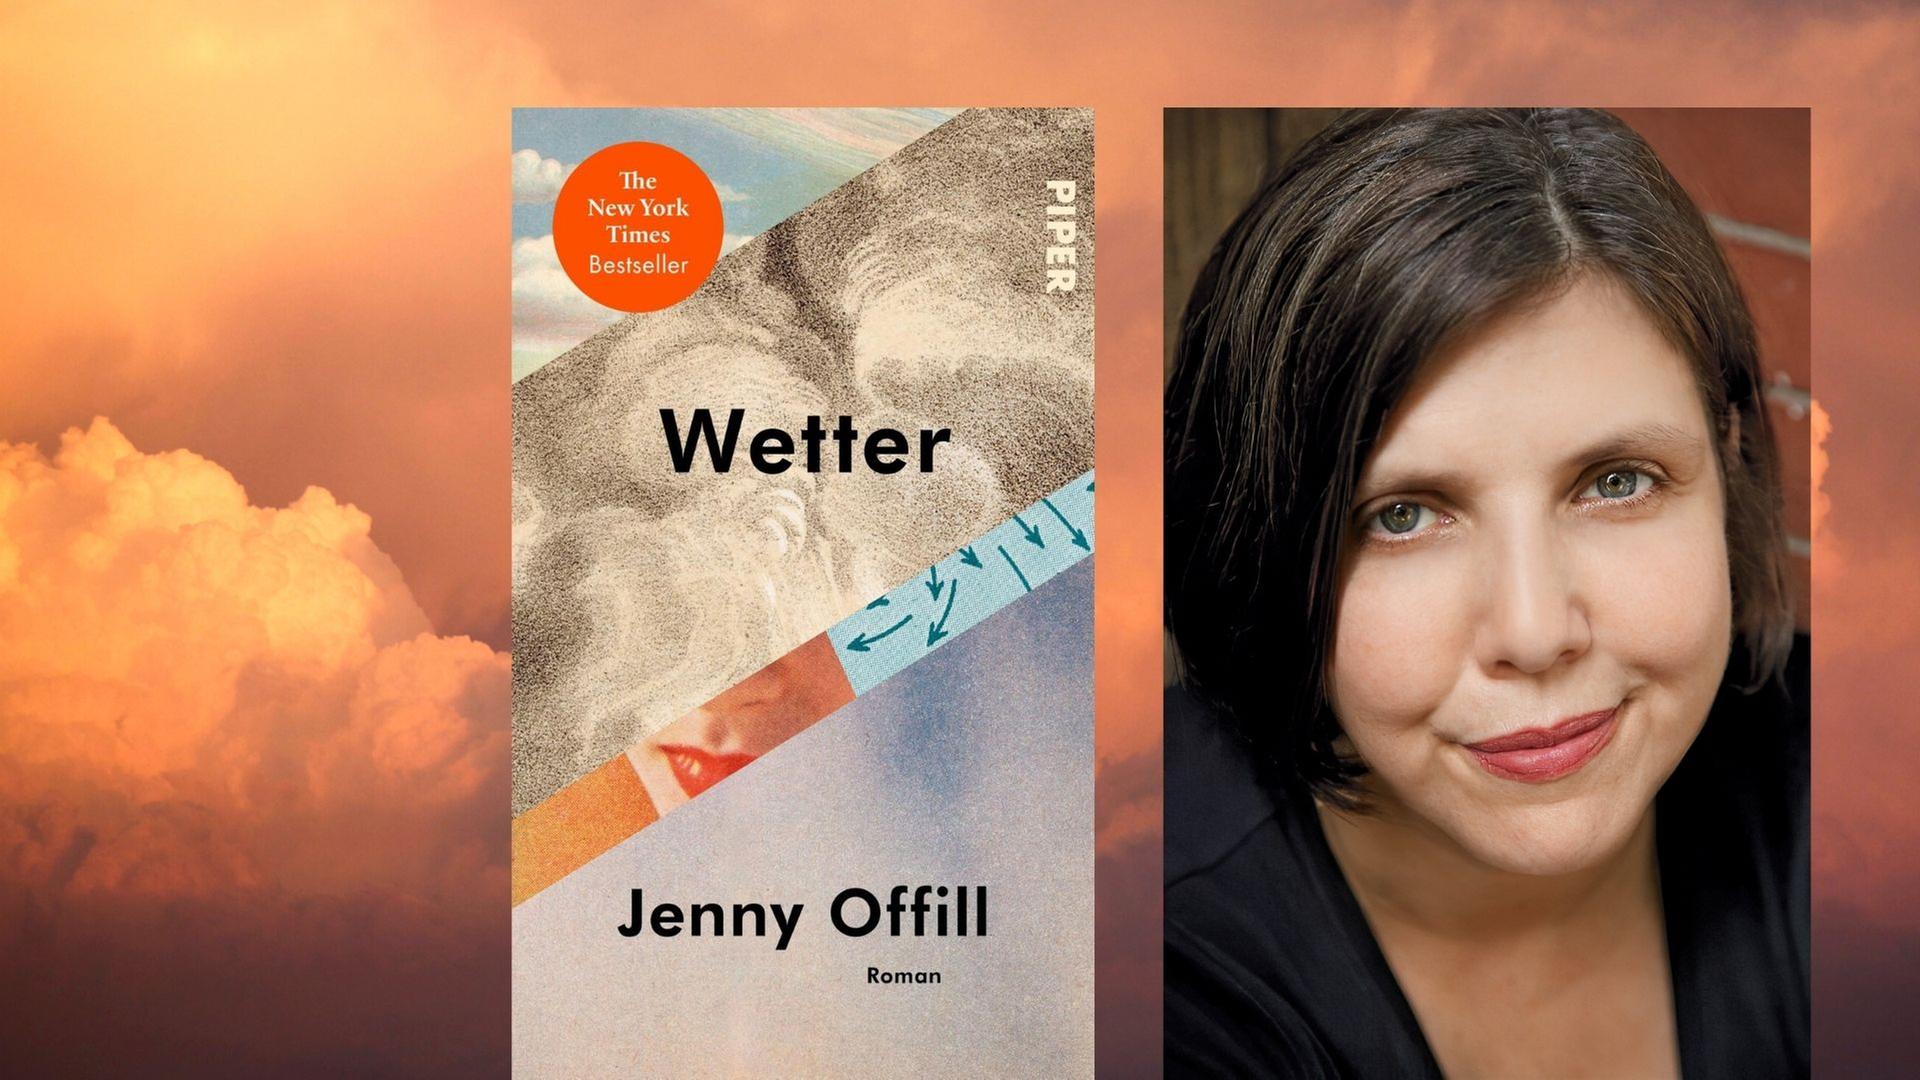 Vordergrund: Buchcover "Wetter" sowie ein Portrait der Autorin Jenny Offill / Hintergrund: Stockimage Wolken